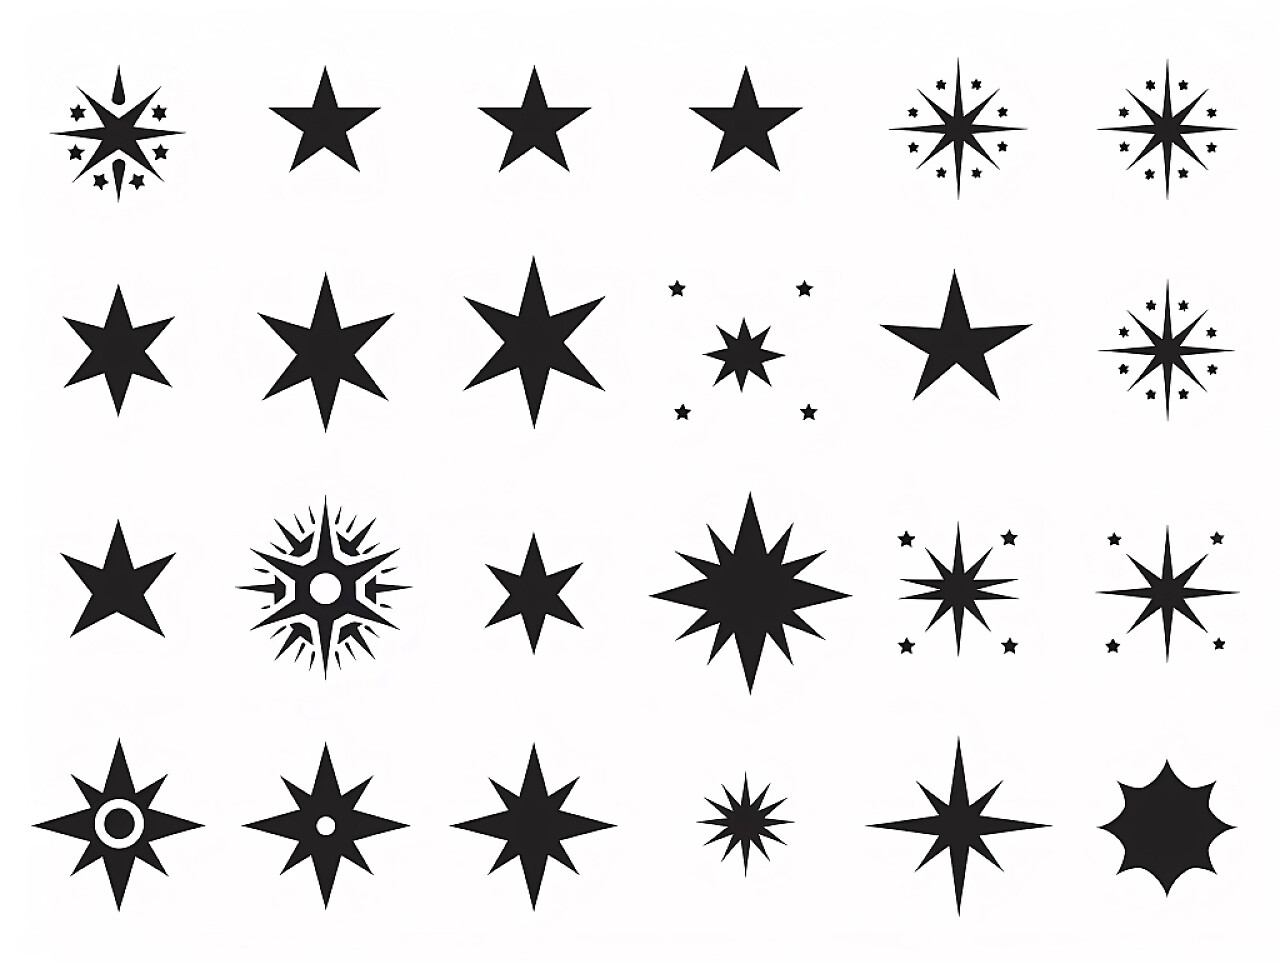 各种星星图案大全手绘星星元素